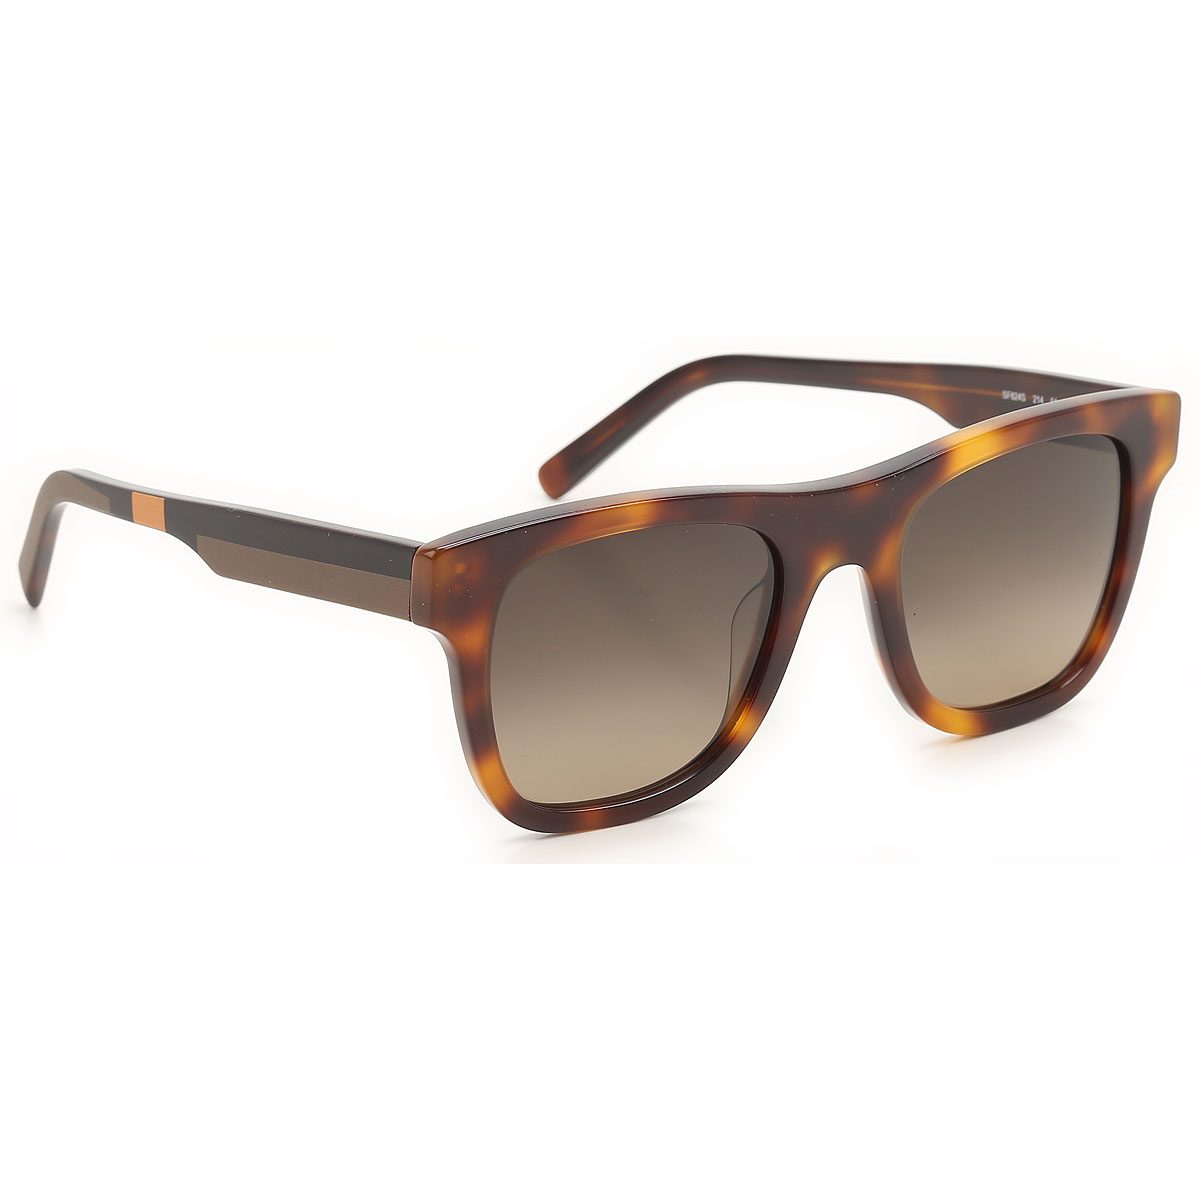 Sunglasses Salvatore Ferragamo, Style code: sg824s-214-N03